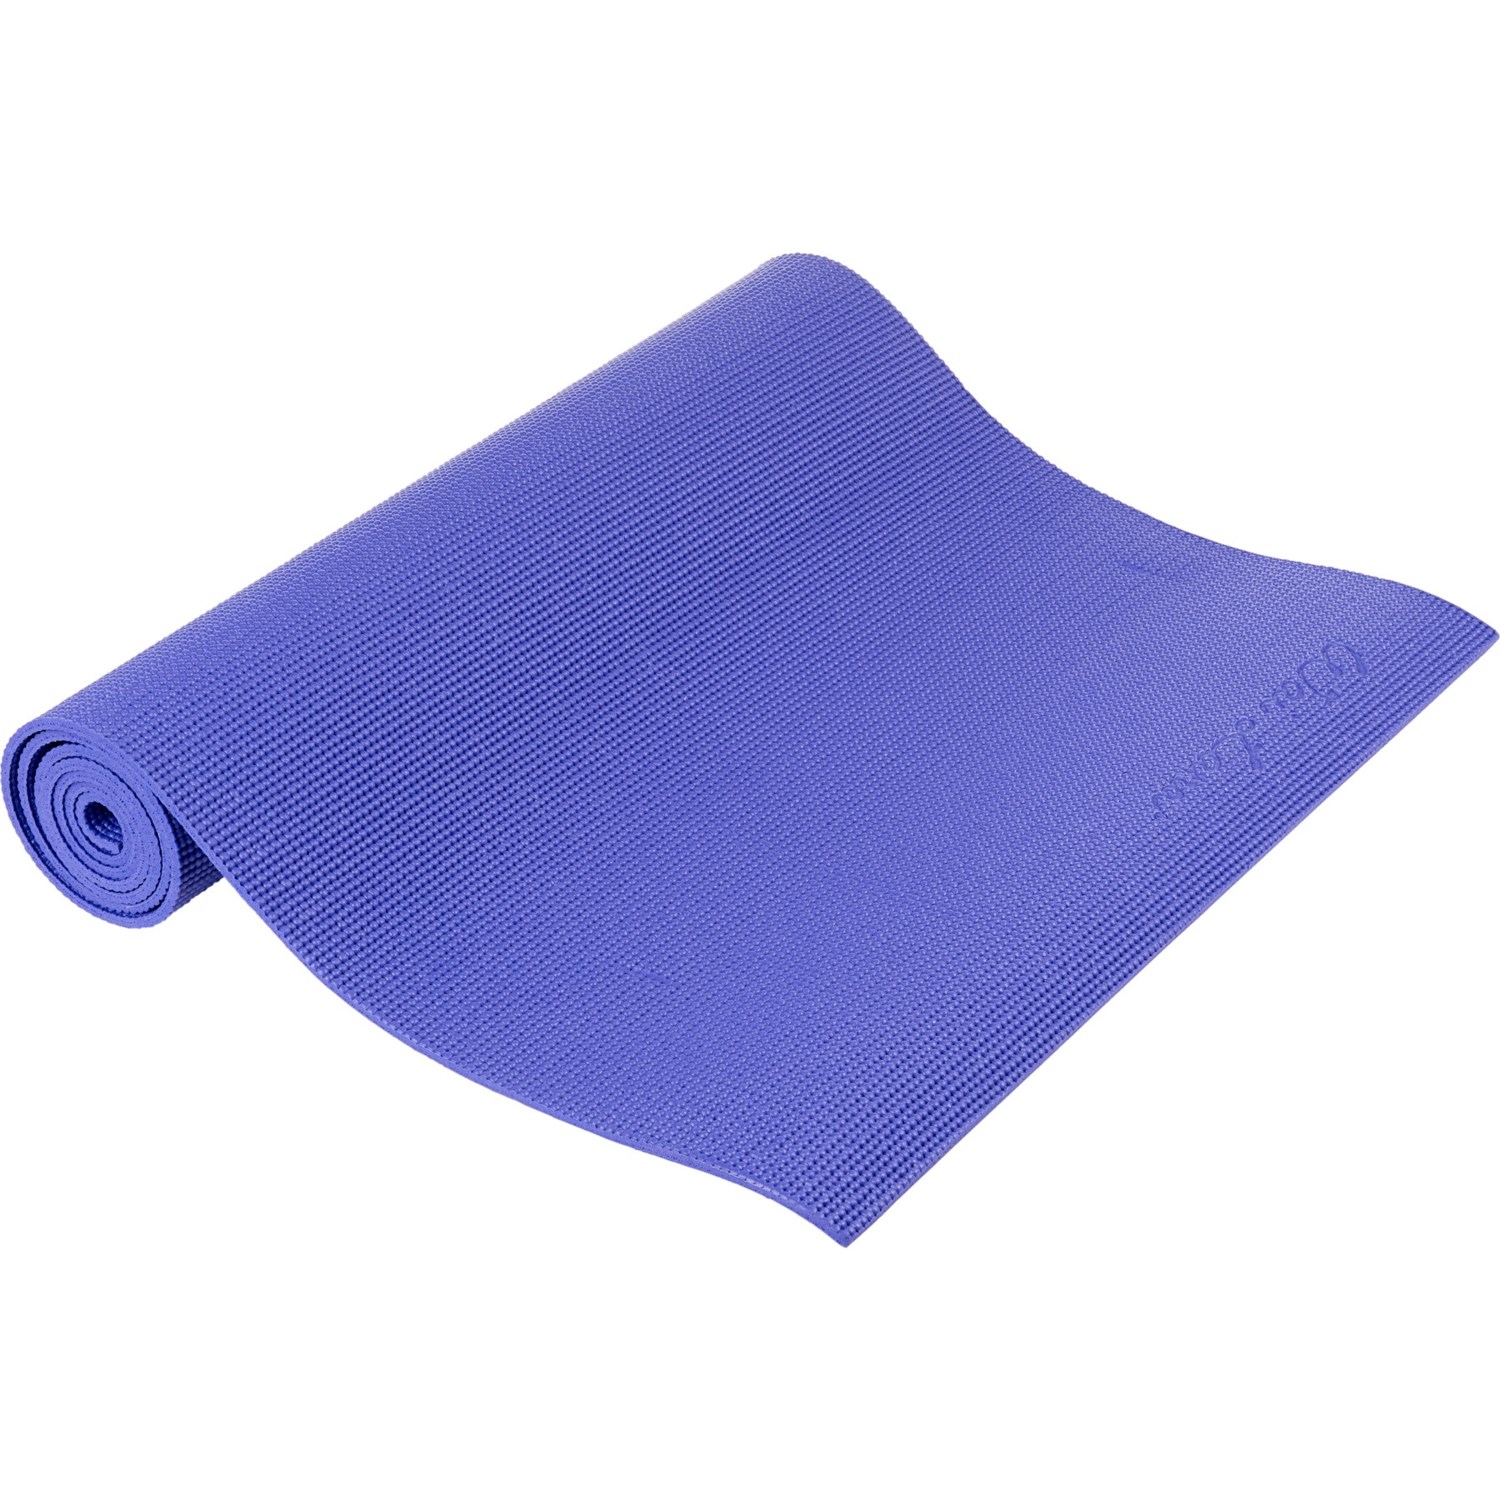 Wai Lana Yoga Mat - 6 mm, 68x24”